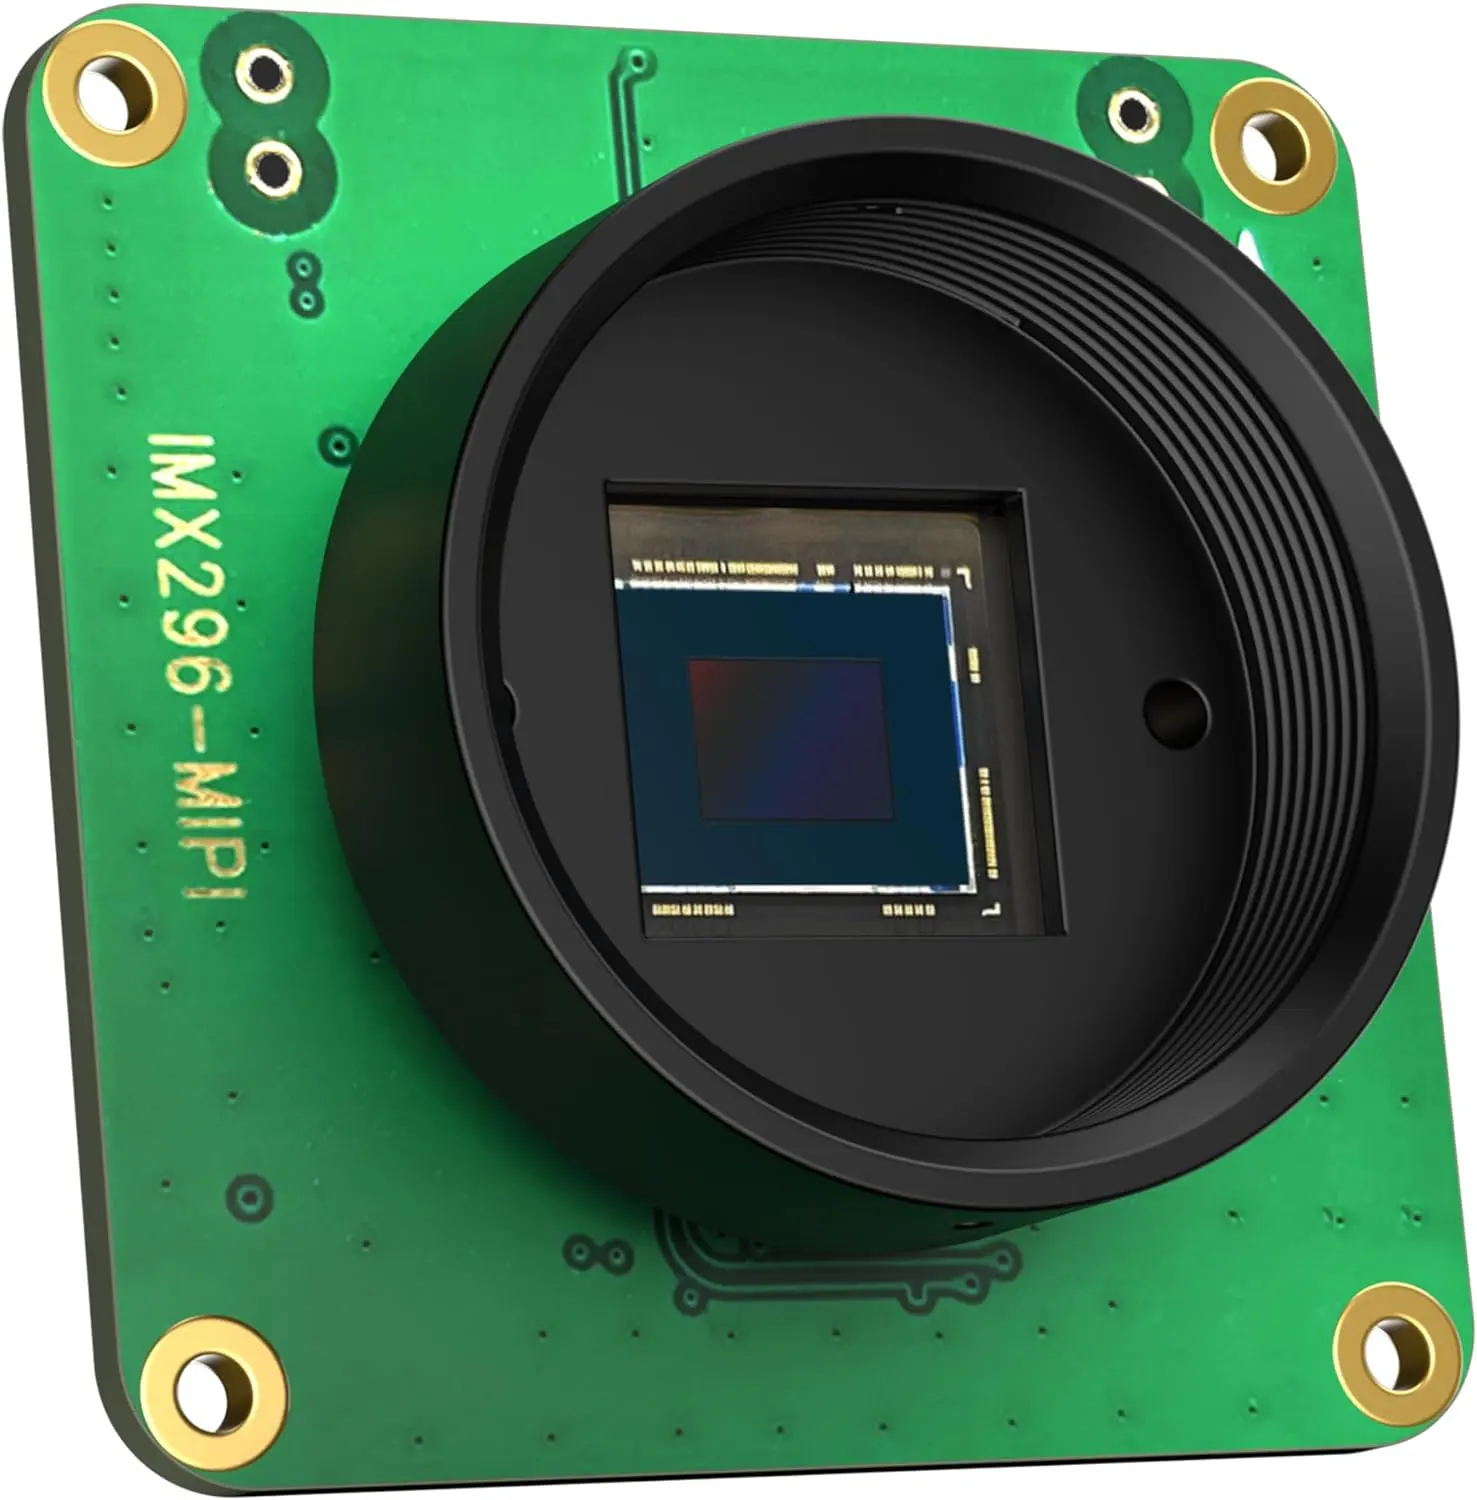 GS kamera IMX296 CMOS Sensor Global Shutter kamera modul eksternal perangkat keras pemicu mendukung lensa CS dan C